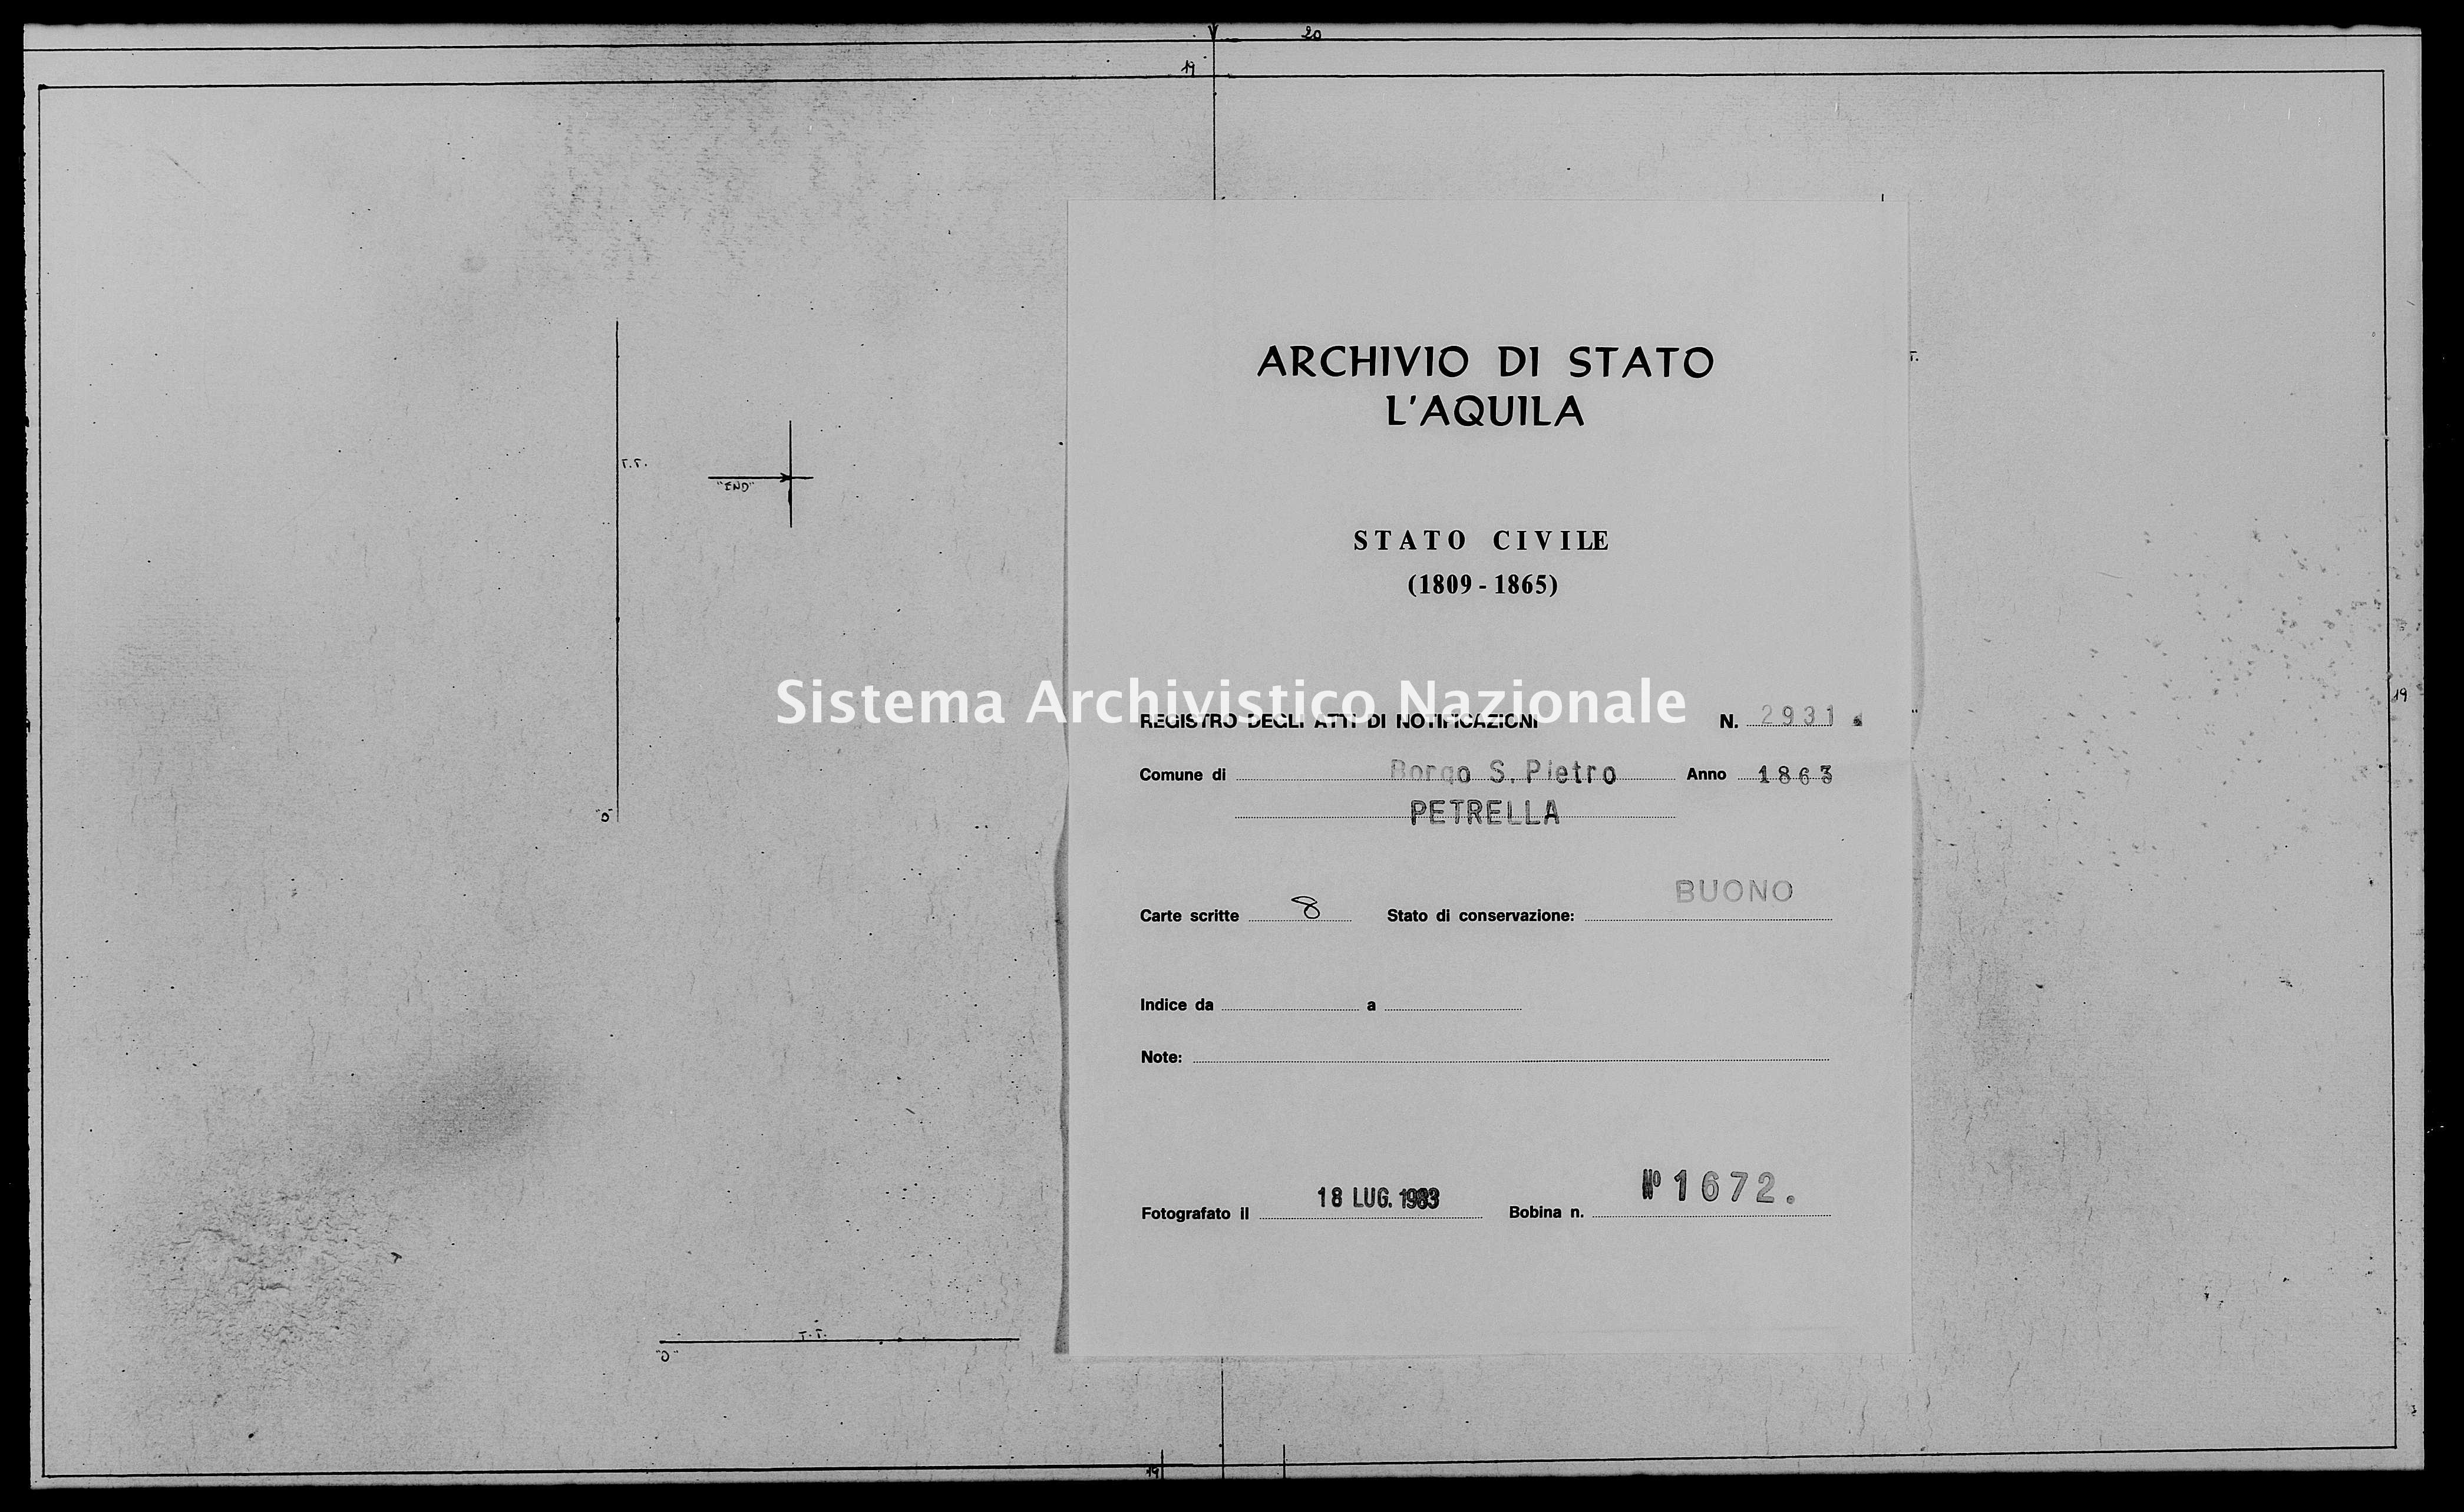 Archivio di stato di L'aquila - Stato civile italiano - Borgo San Pietro - Matrimoni, memorandum notificazioni ed opposizioni - 1863 - 2931 -